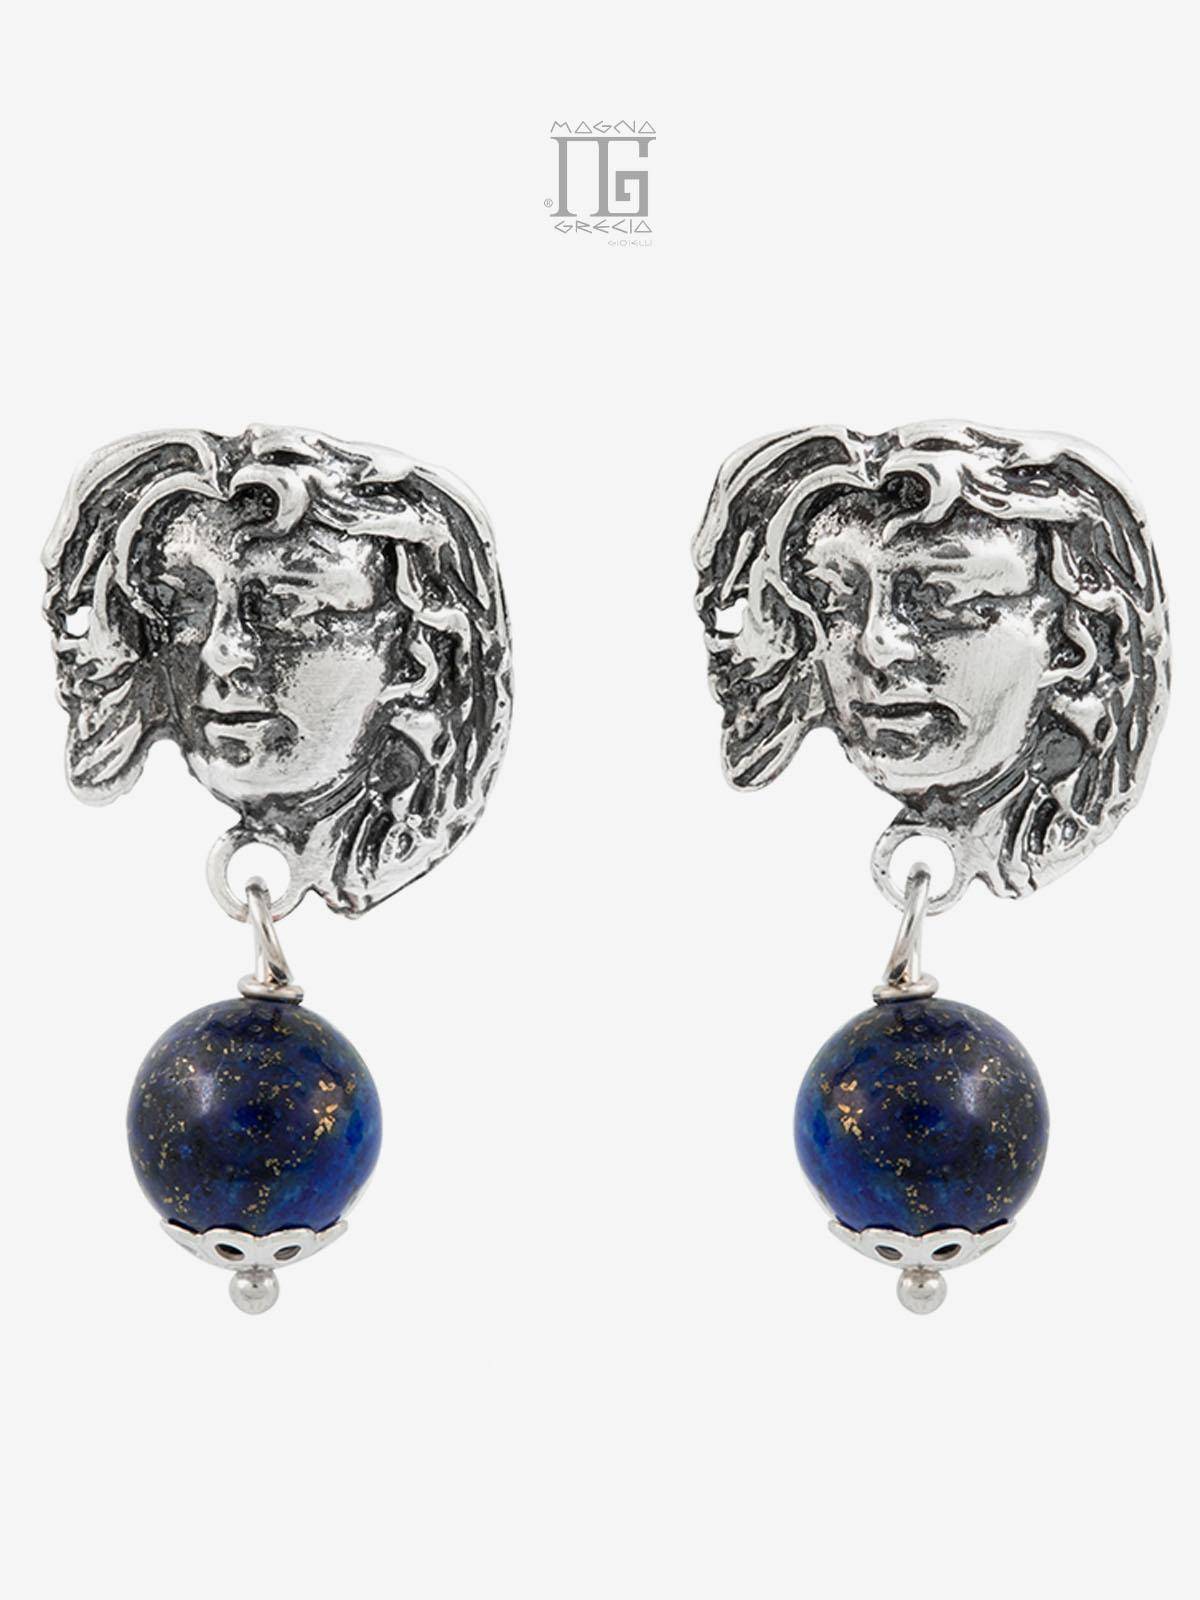 Pendientes “Tranquilidad” en Plata que representan el Rostro de la Diosa Venus y Lapislázuli Azul Cod. MGK 3852 V-4.